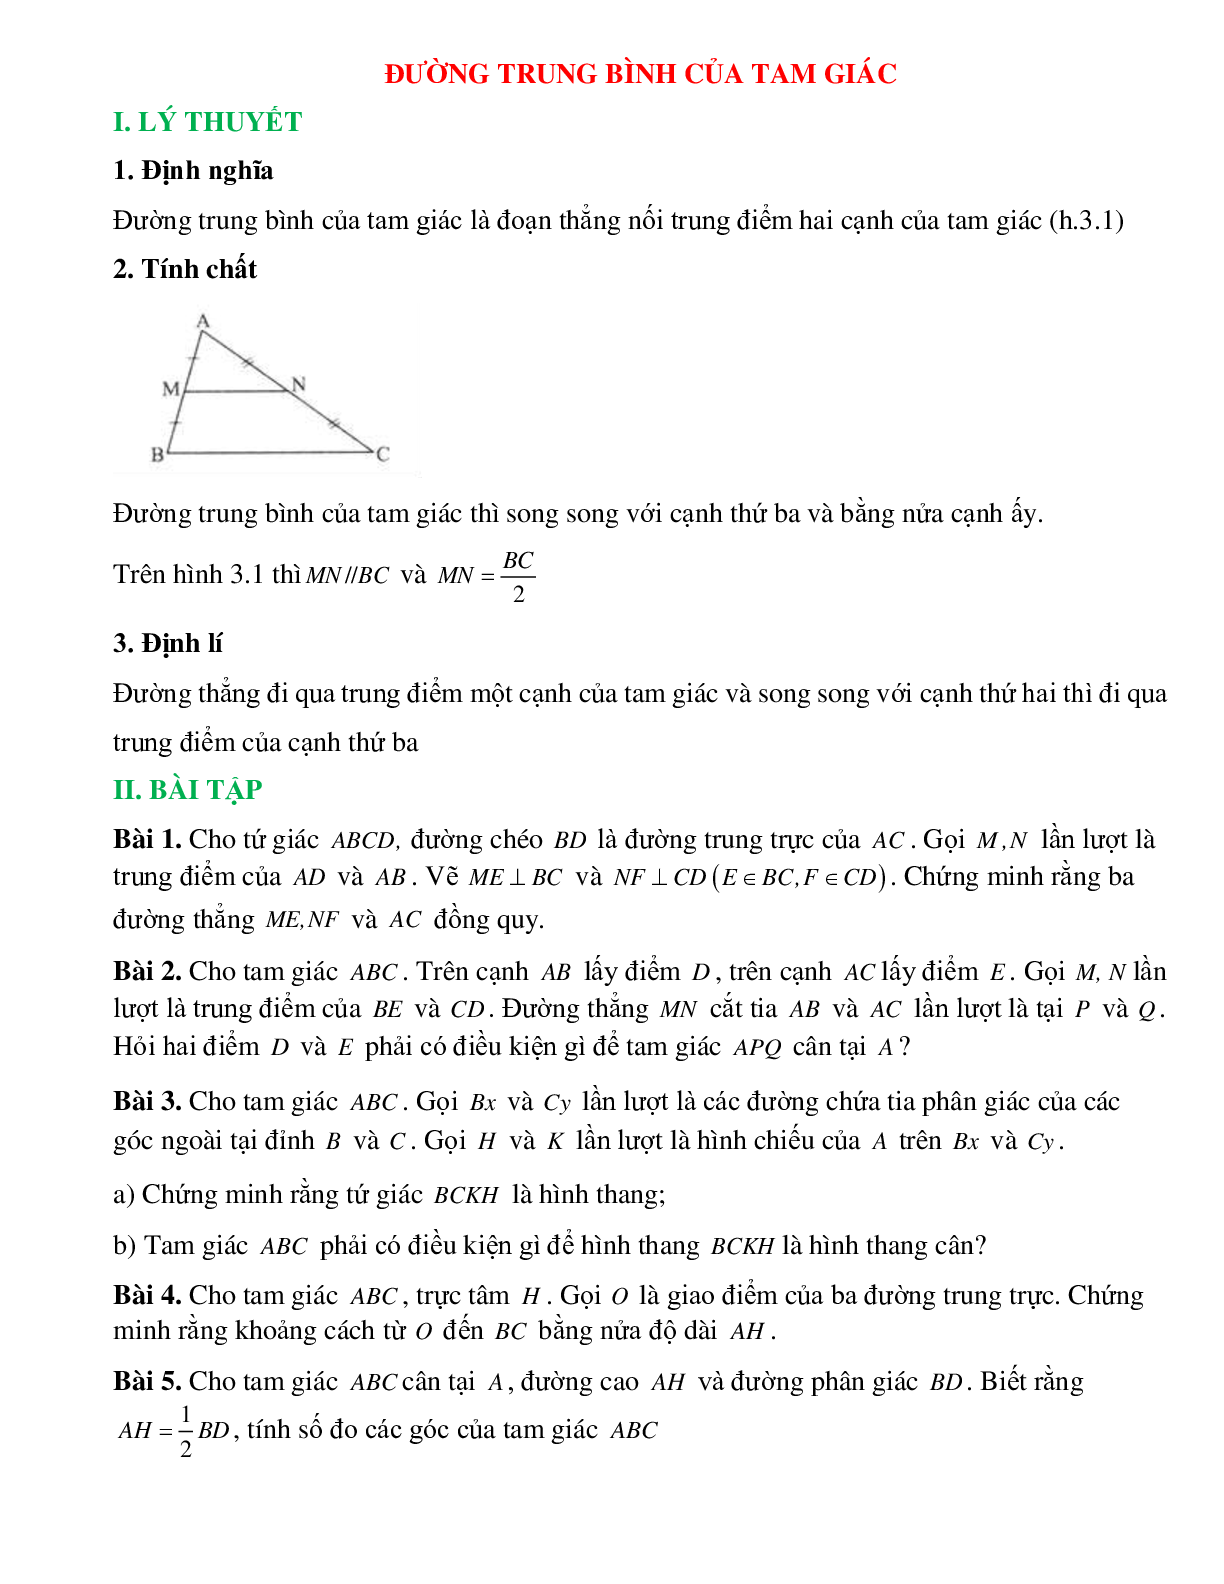 Đường trung bình của tam giác (trang 1)